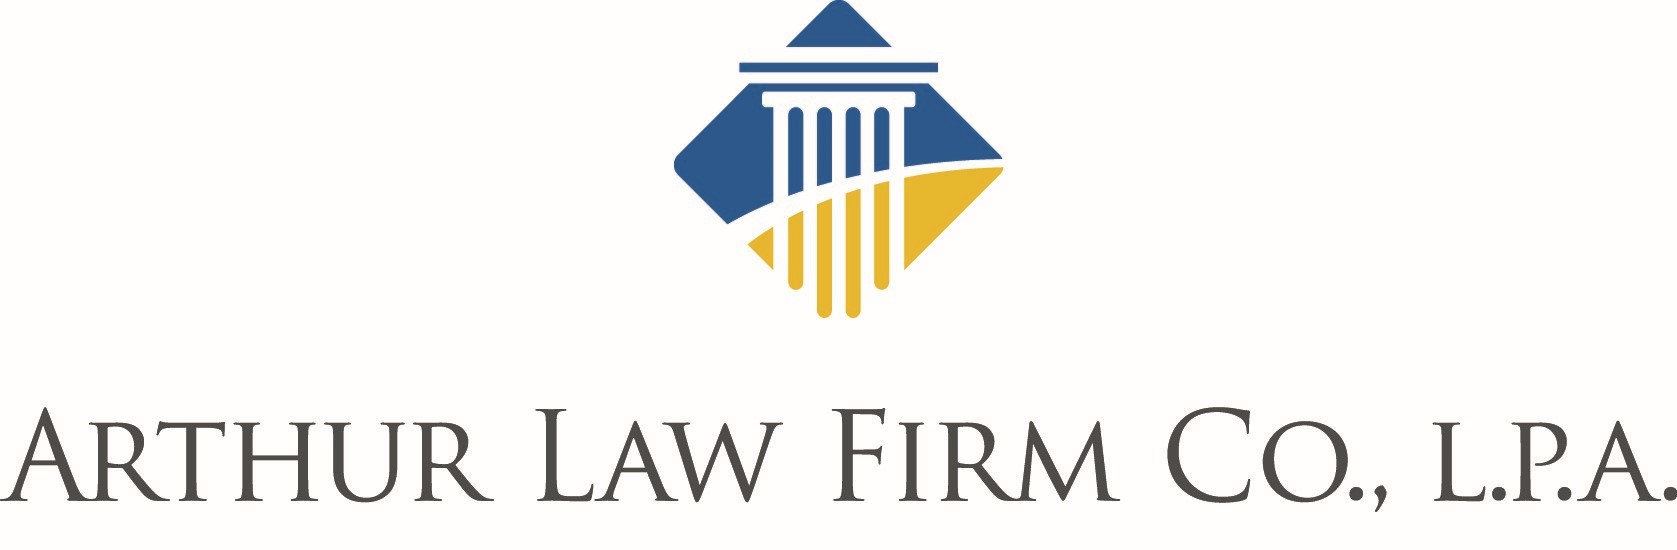 Arthur Law Firm CO., L.P.A. (Tier 4)